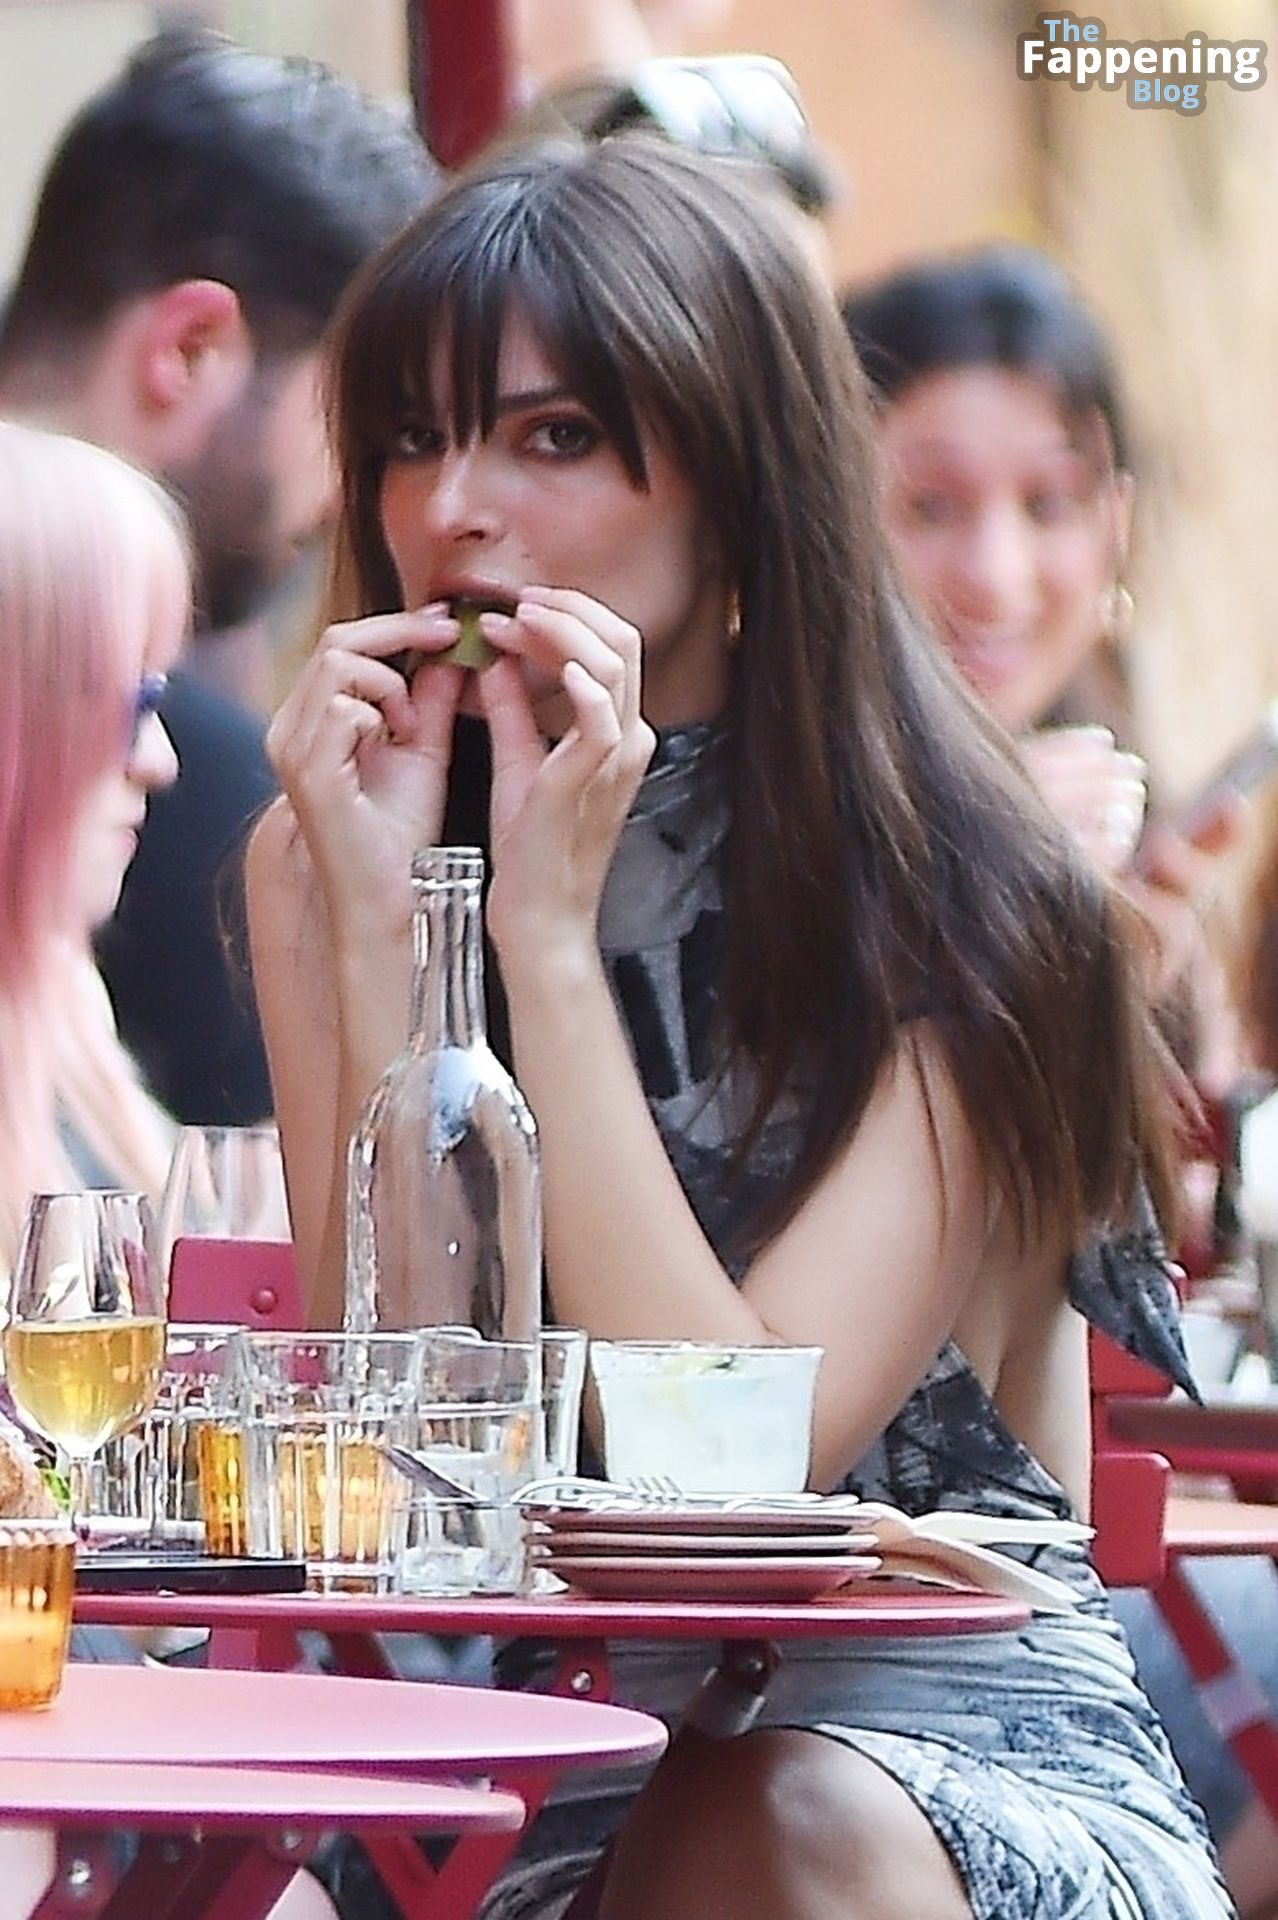 Emily Ratajkowski Dispays Her Sexy Boobs as She Enjoys Dinner with Friends (61 Photos)